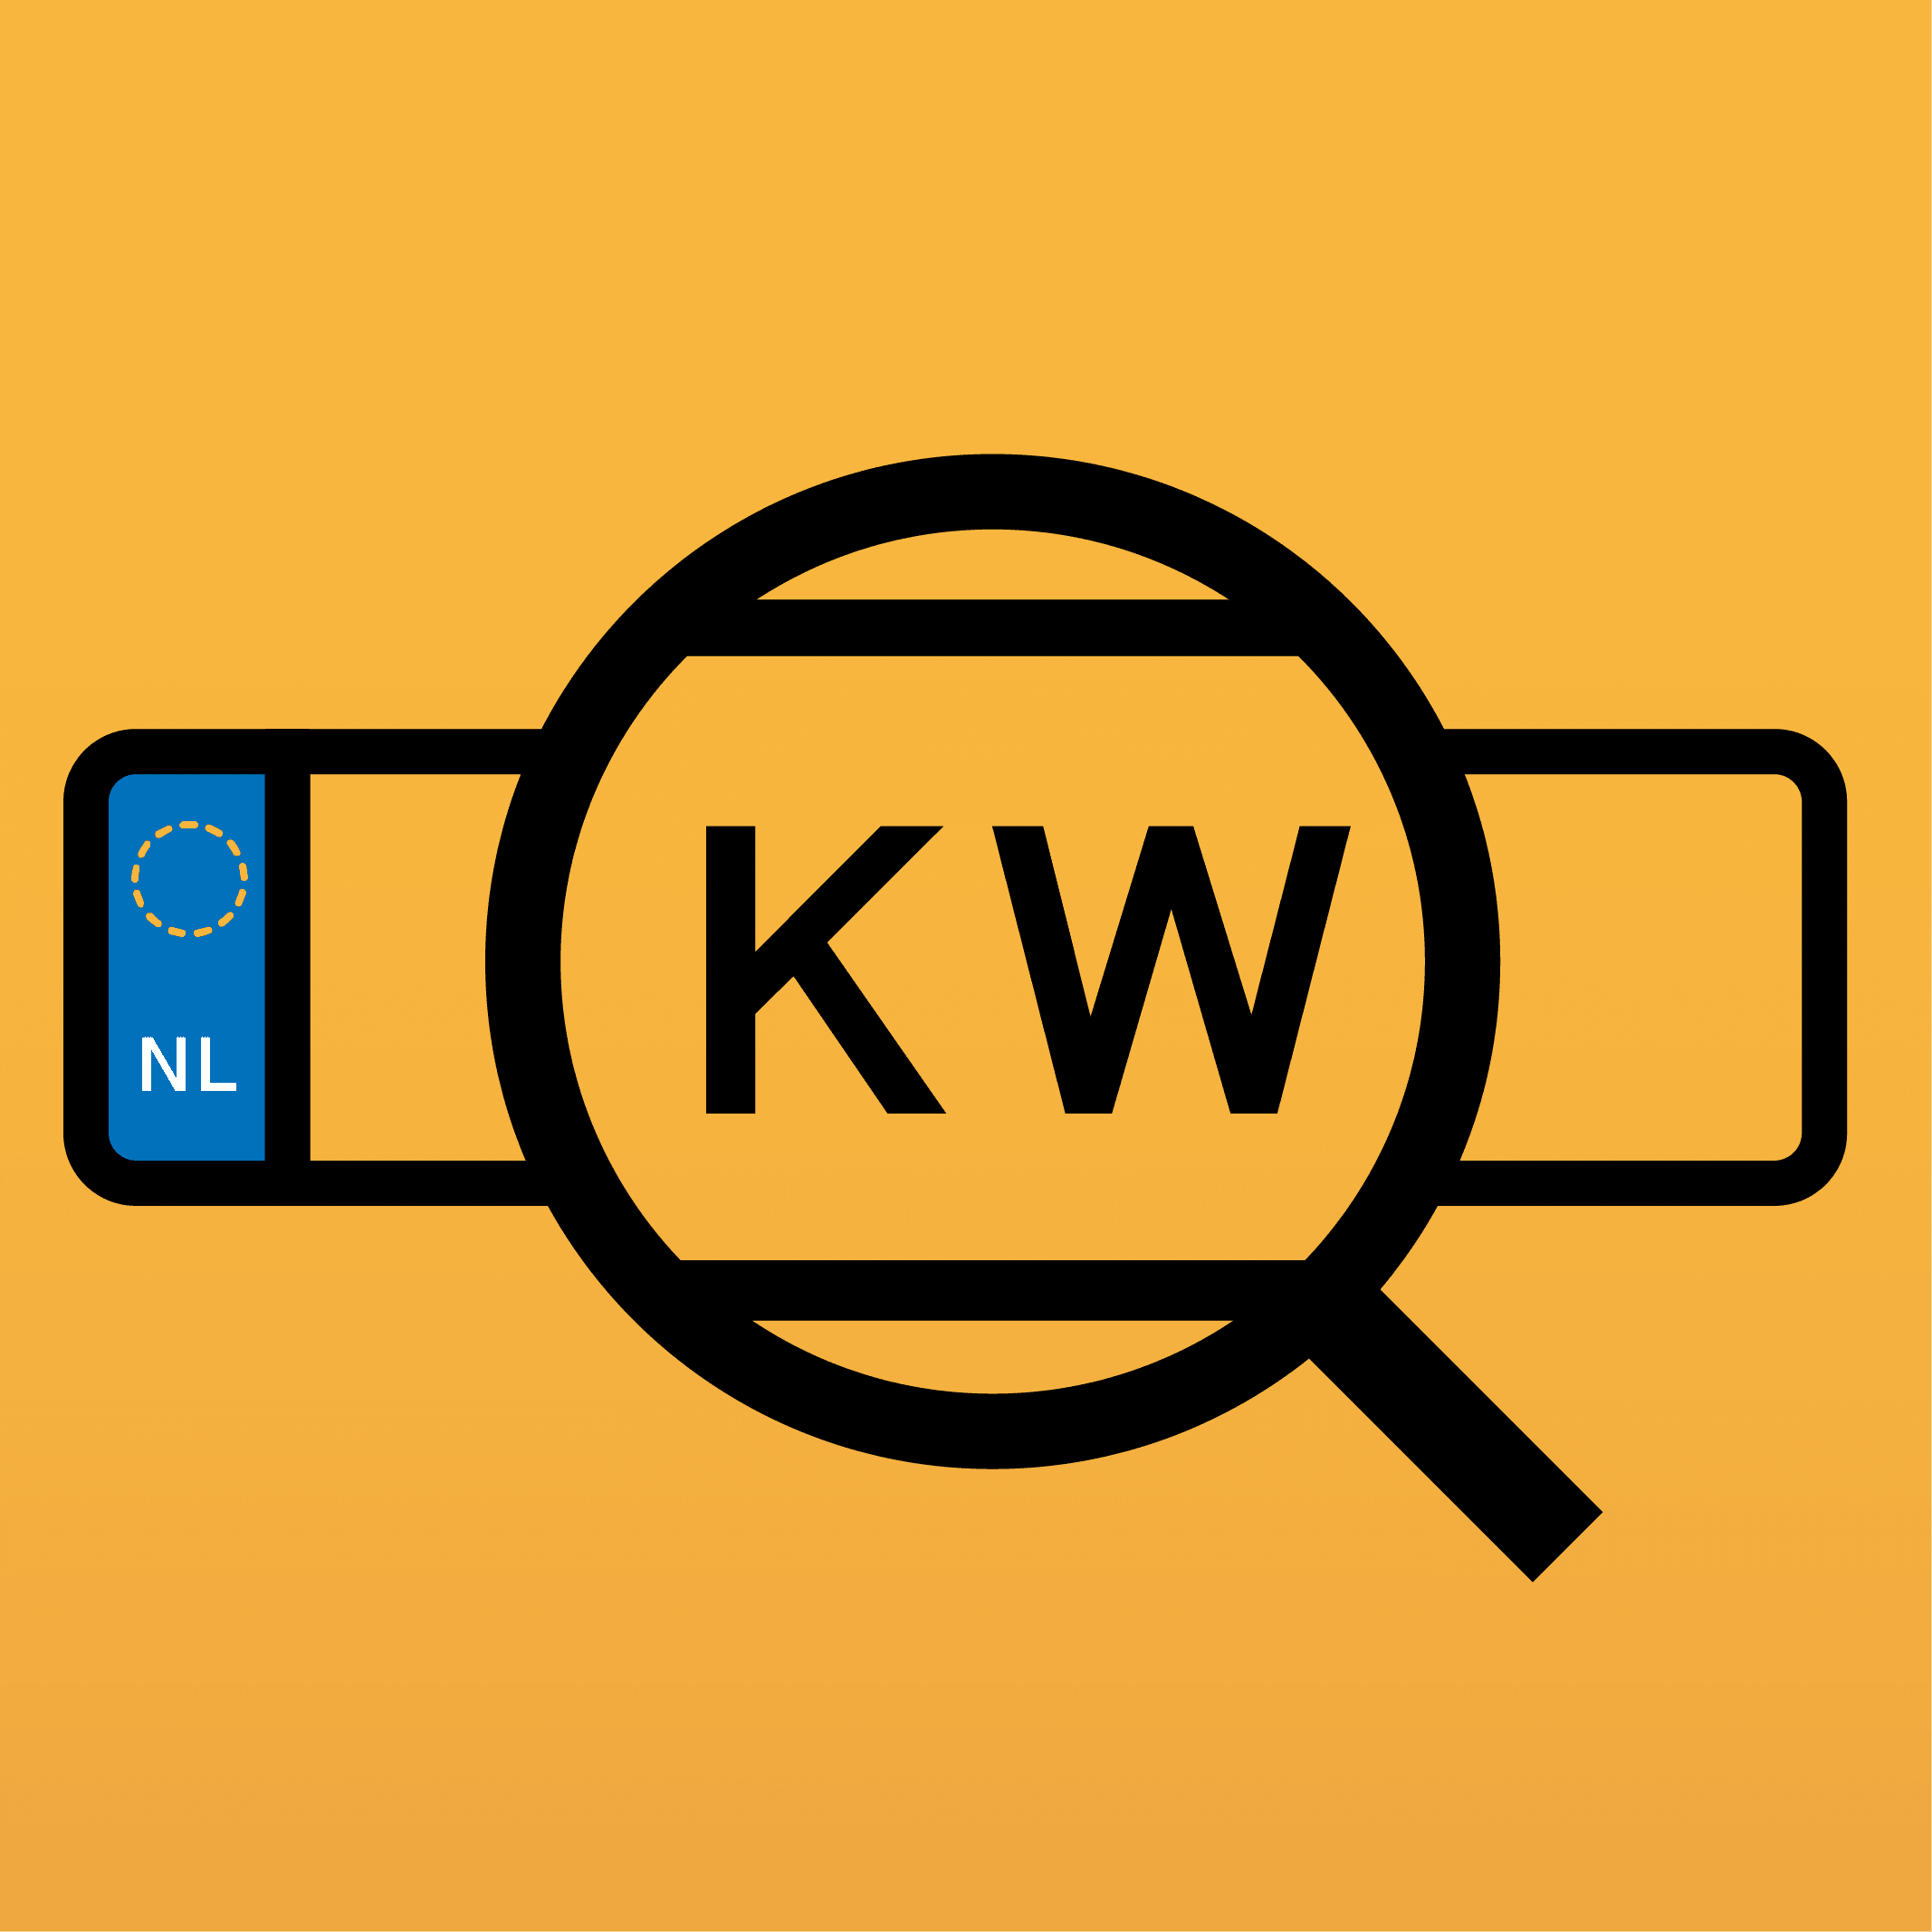 Kenteken wiki logo